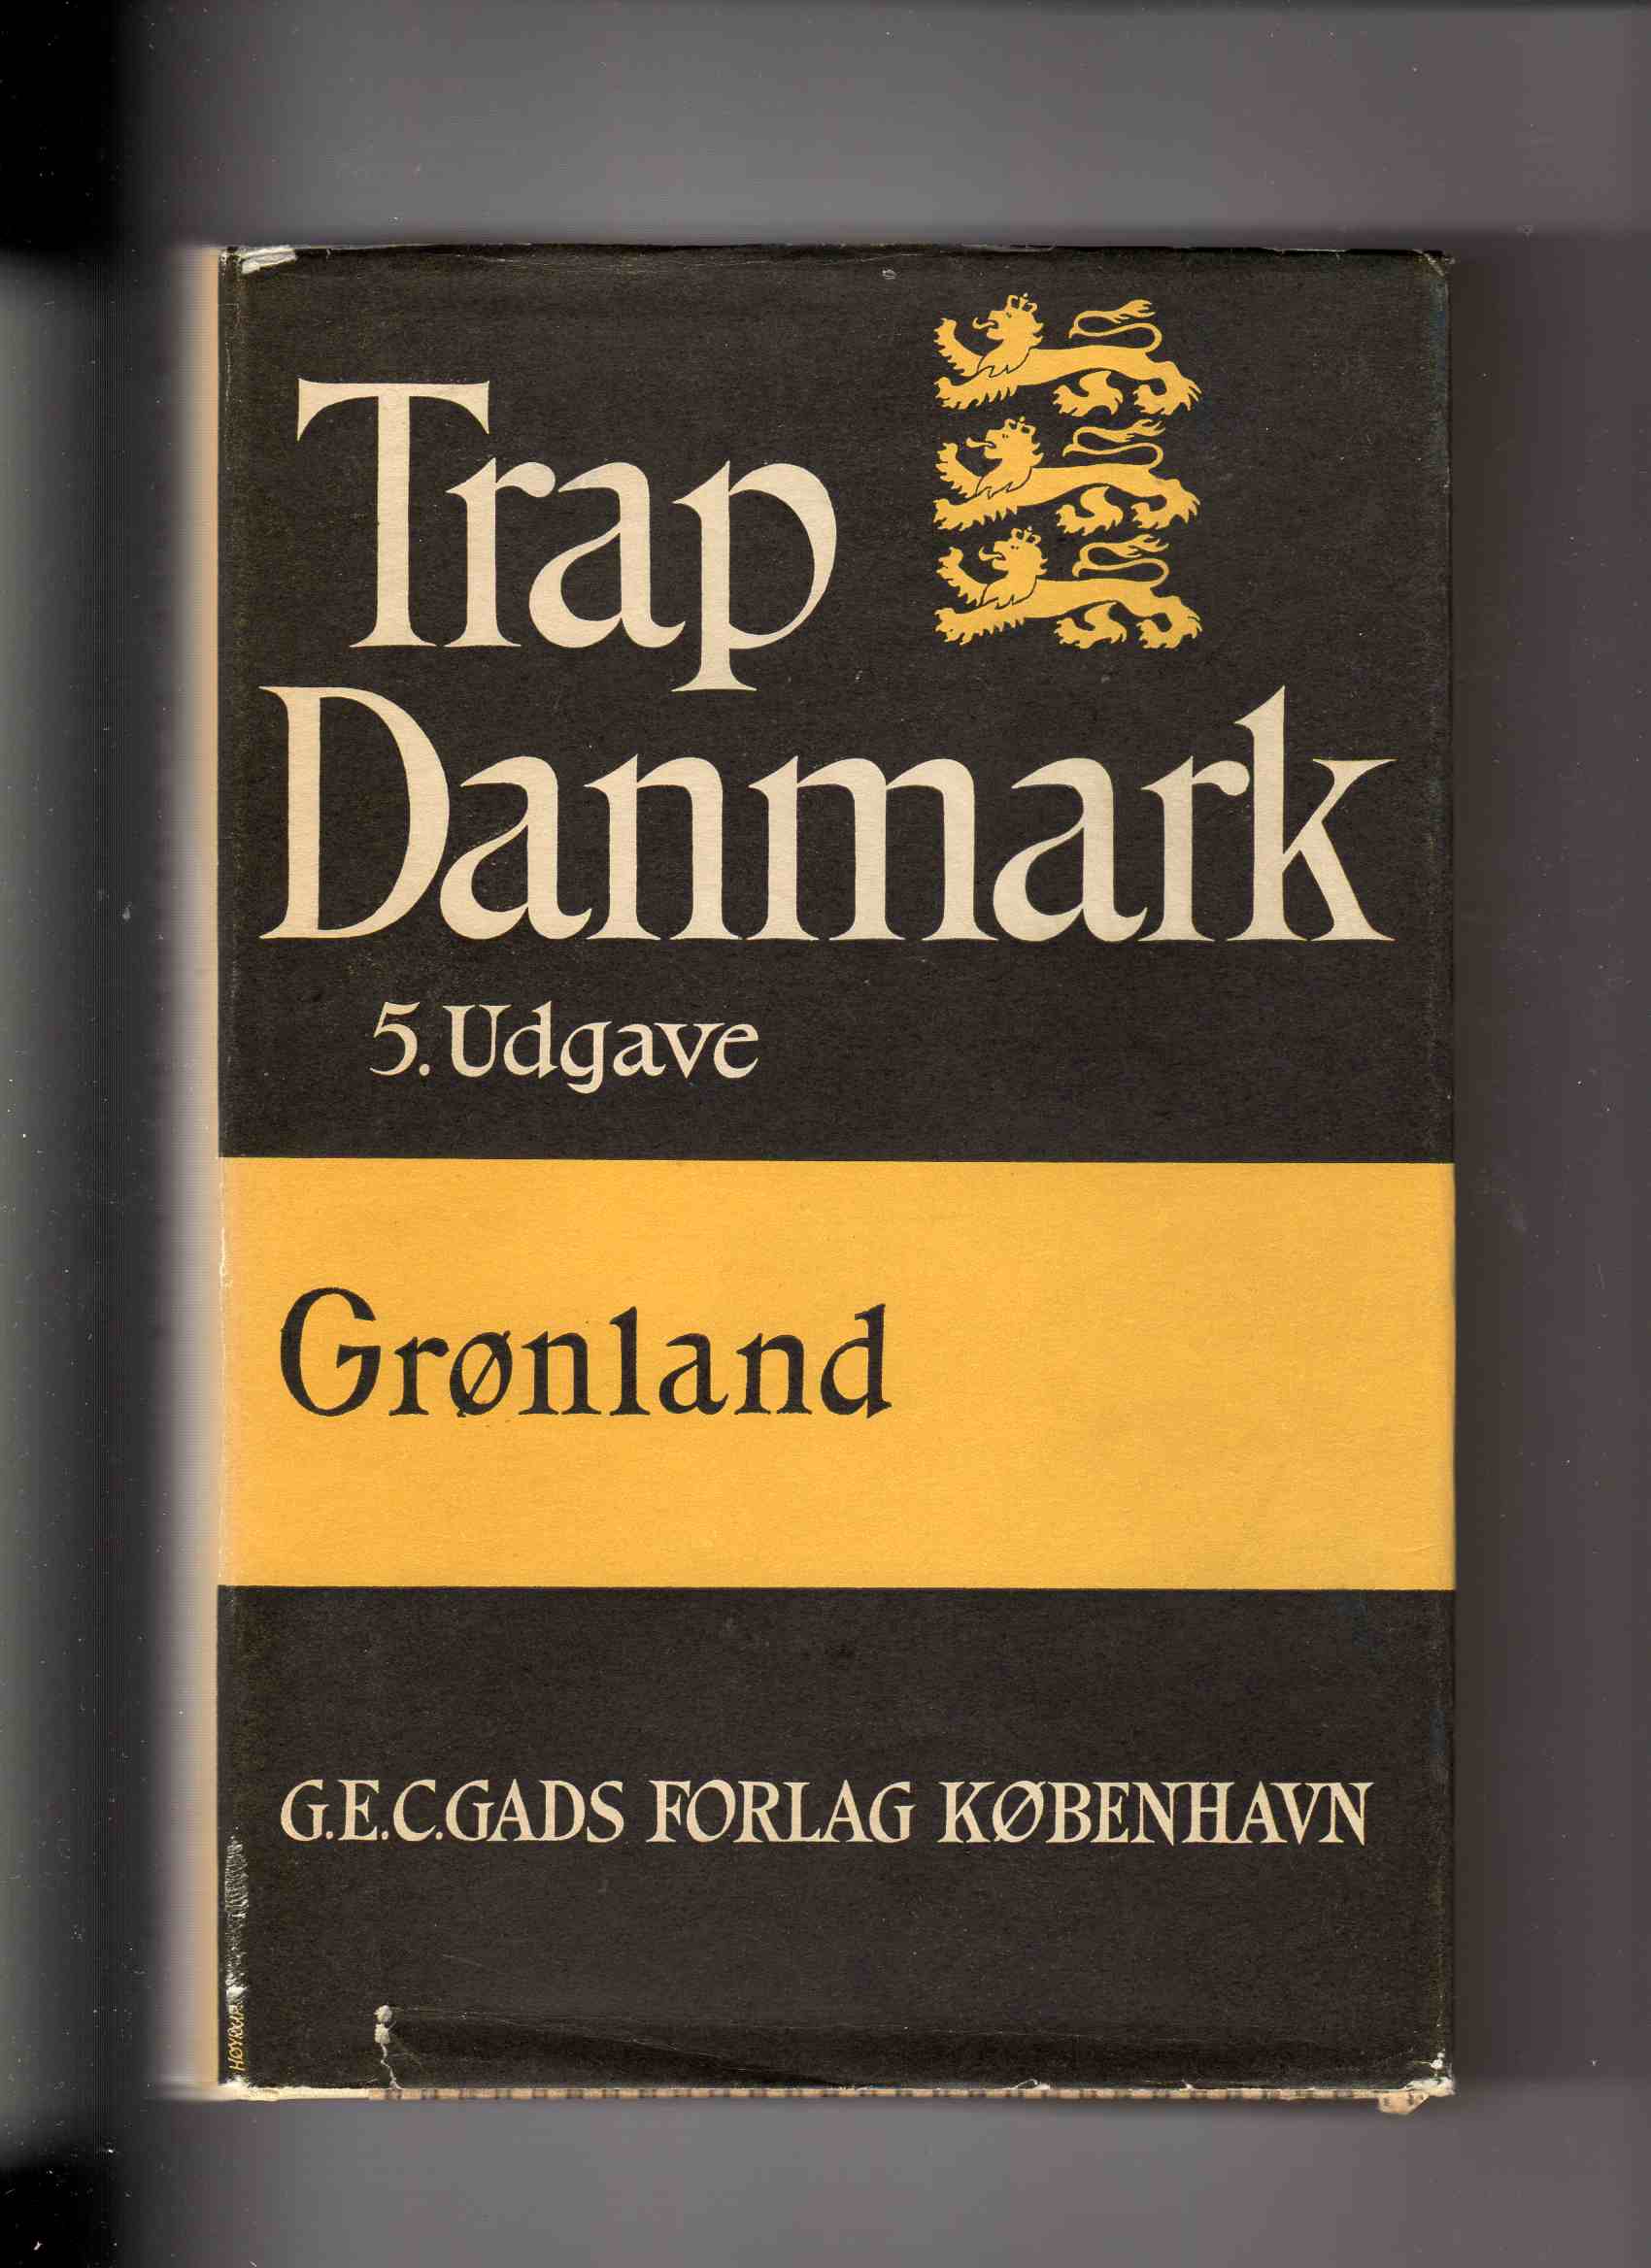 Trap Danmark 5 udgave omslag Grønland Gads forl Kbh Bind XIV Niels Nielsen m fl 1970 pen